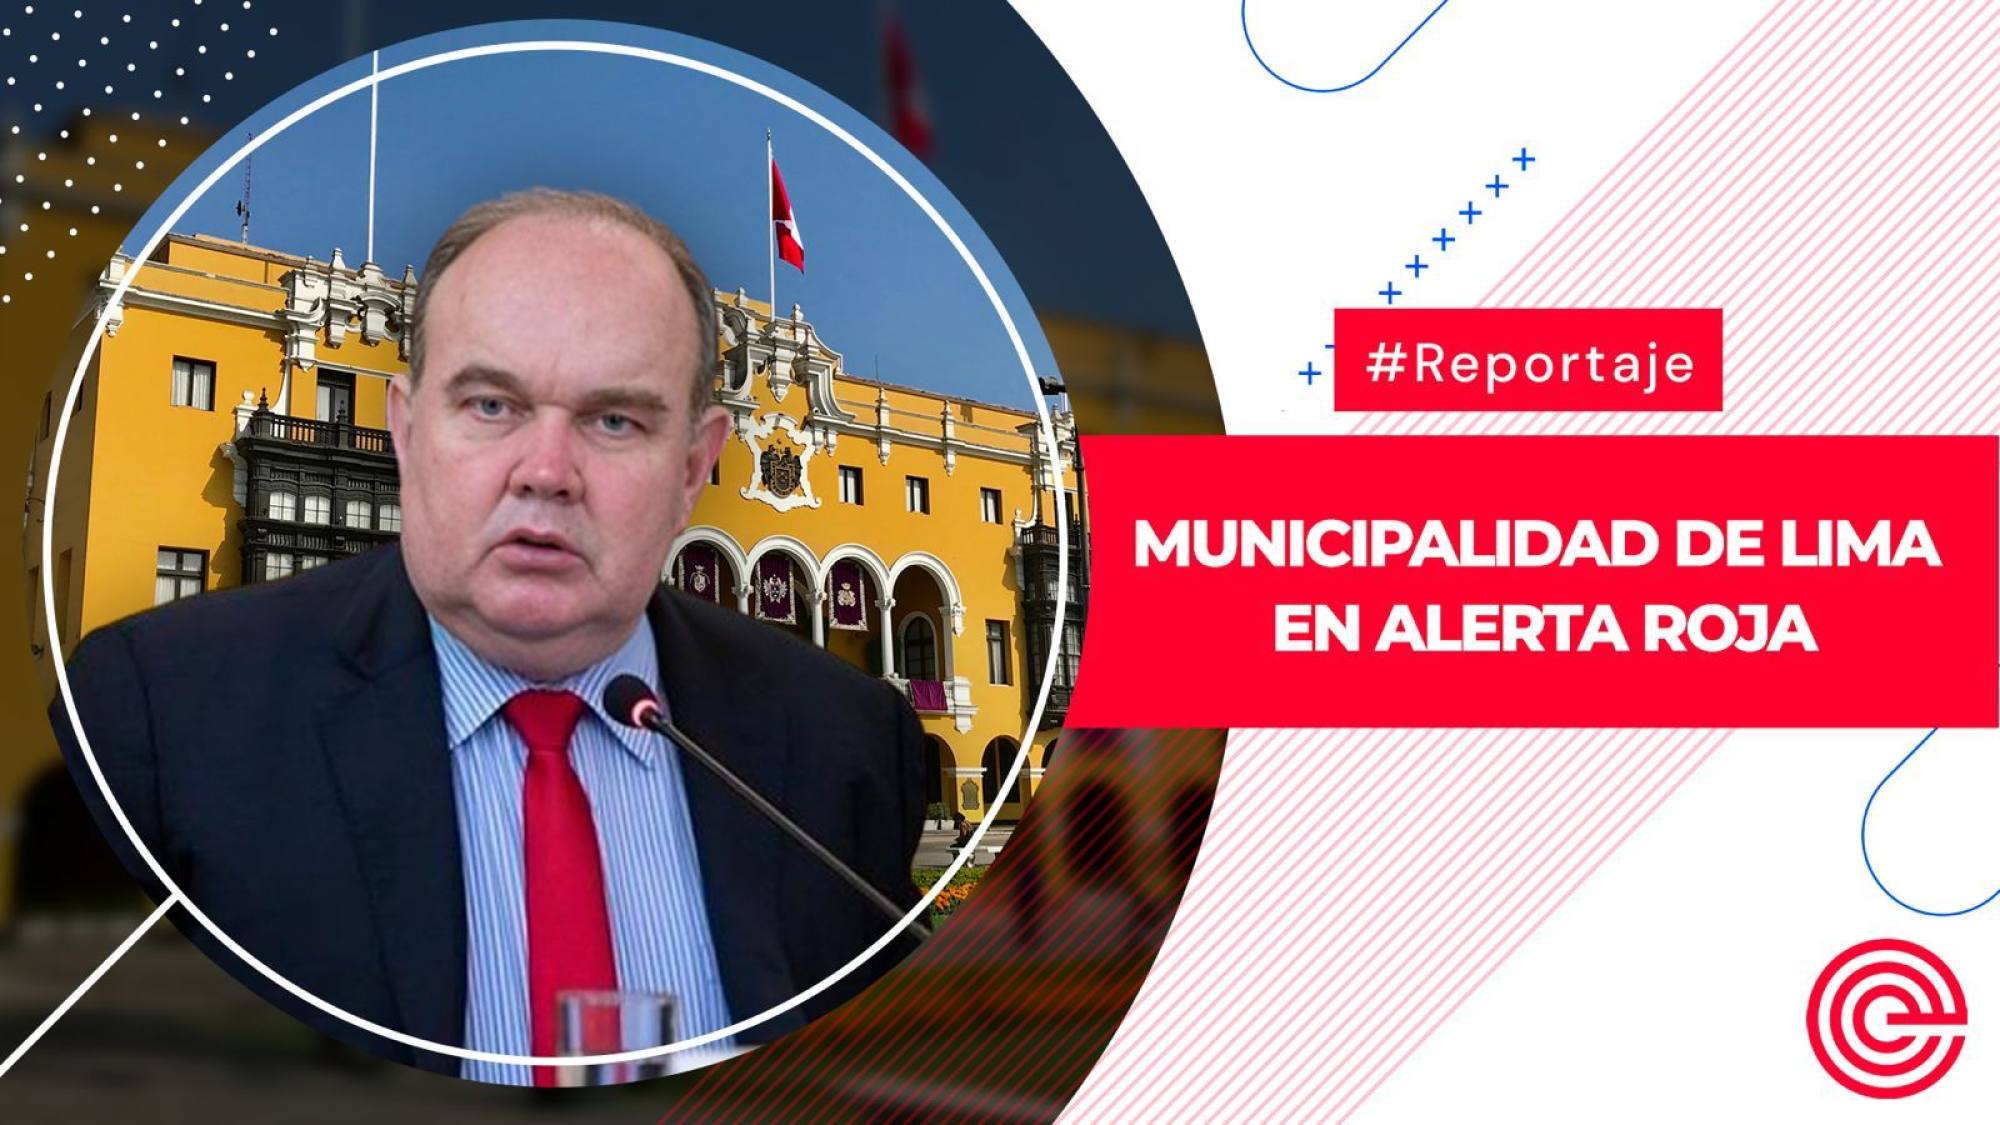 Municipalidad de Lima en alerta roja, Epicentro TV